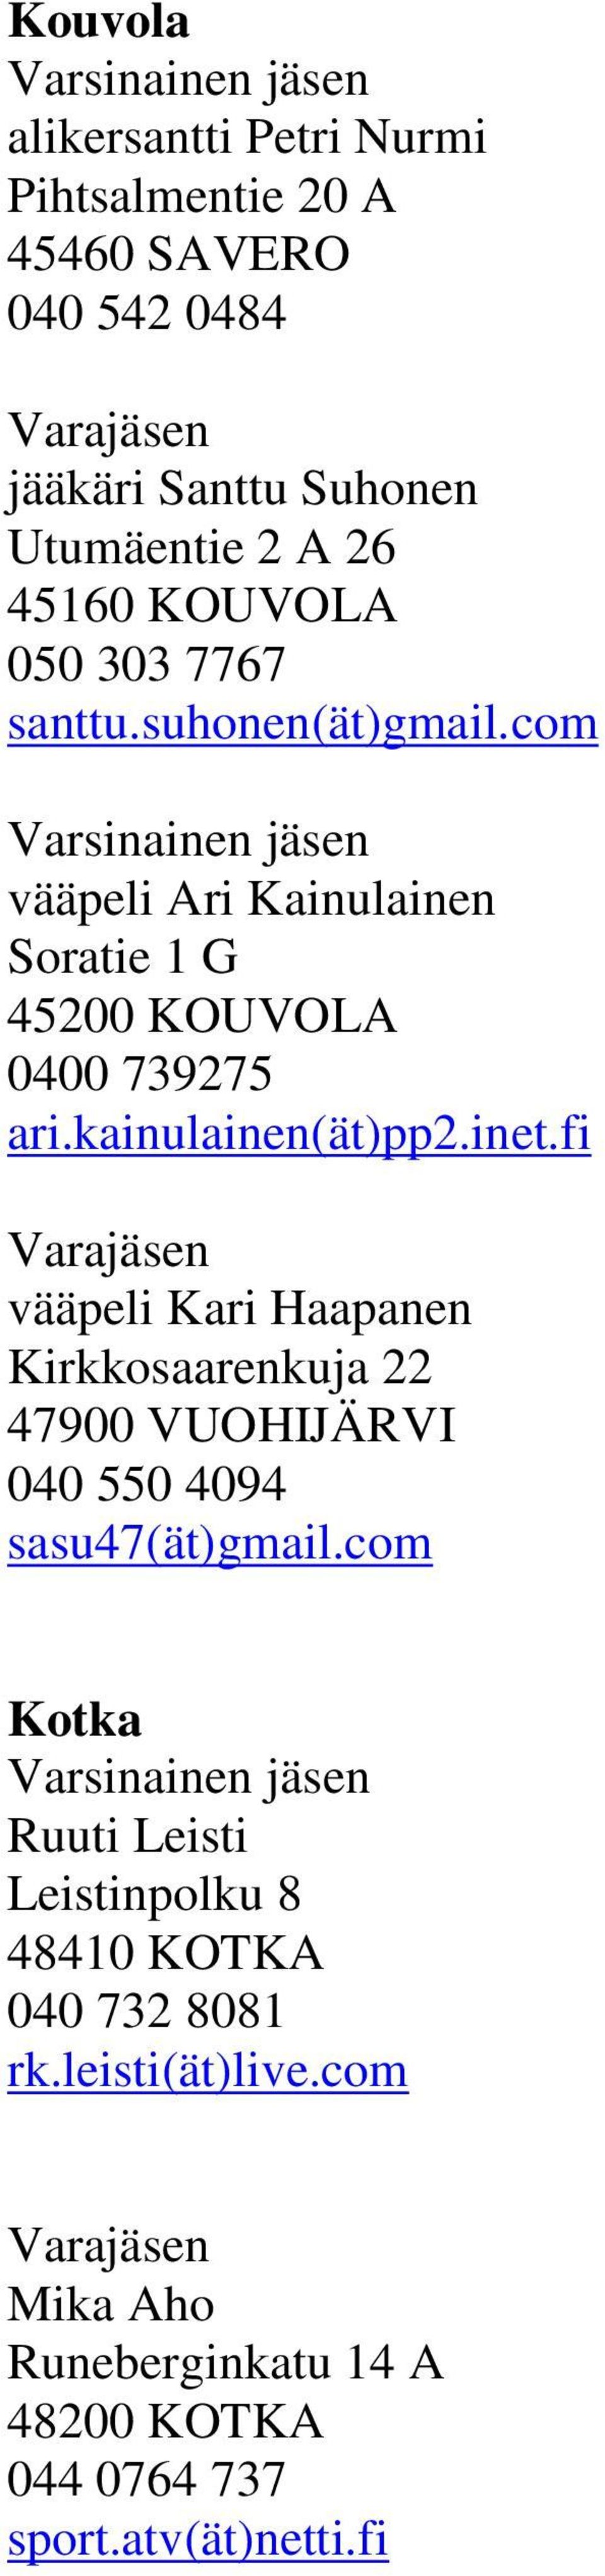 kainulainen(ät)pp2.inet.fi vääpeli Kari Haapanen Kirkkosaarenkuja 22 47900 VUOHIJÄRVI 040 550 4094 sasu47(ät)gmail.